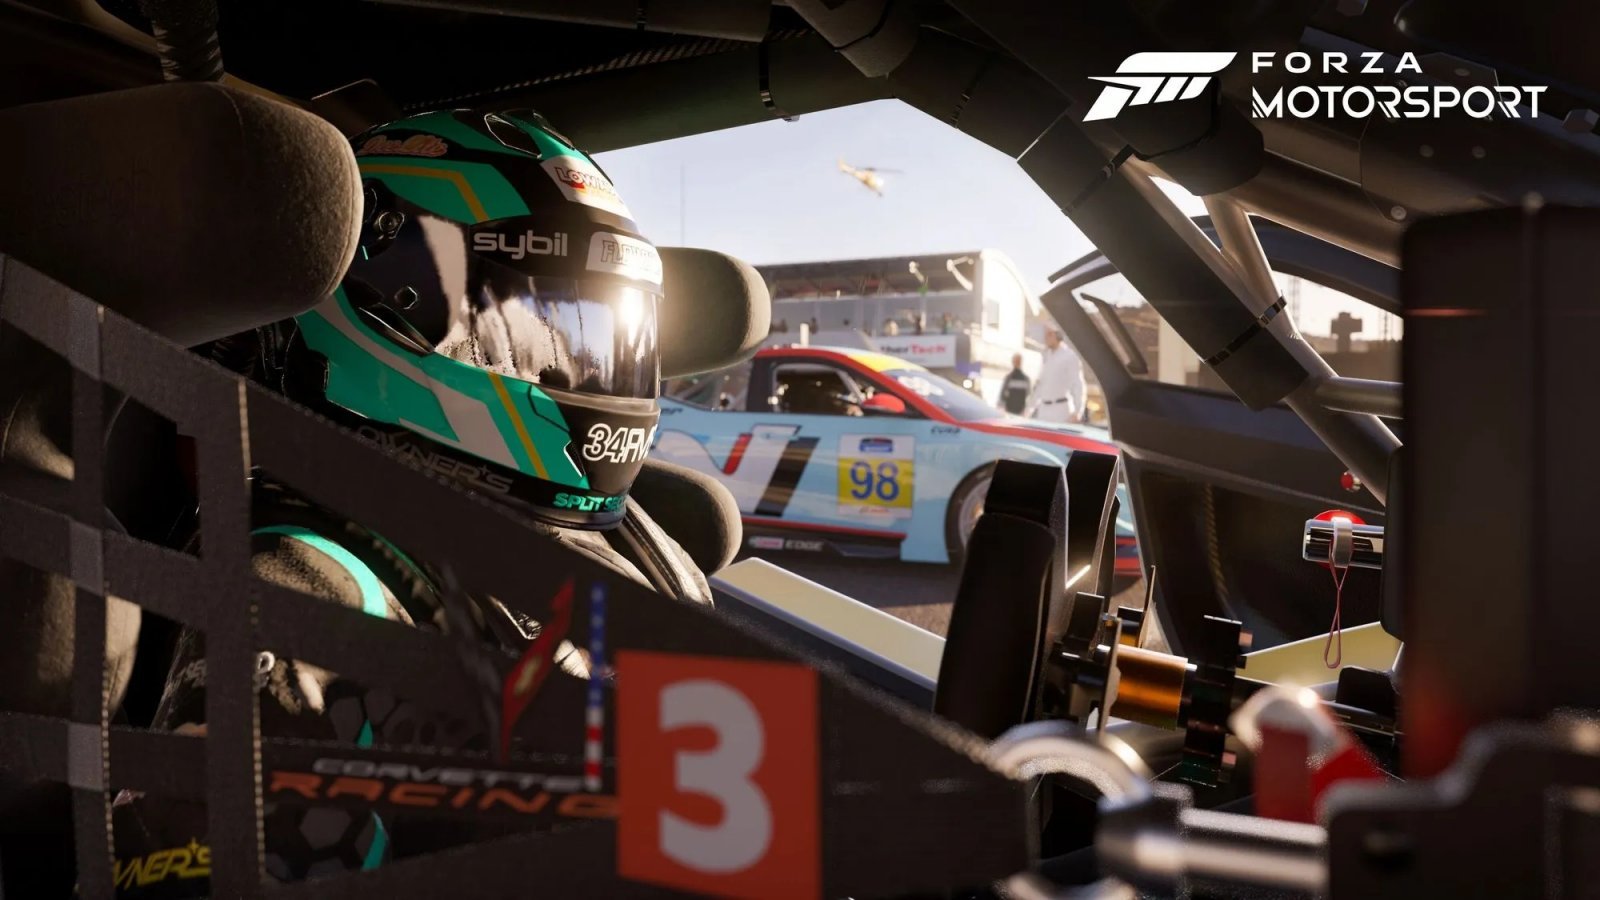 Forza Motorsport: anche i non vedenti possono giocare grazie alle assistenze